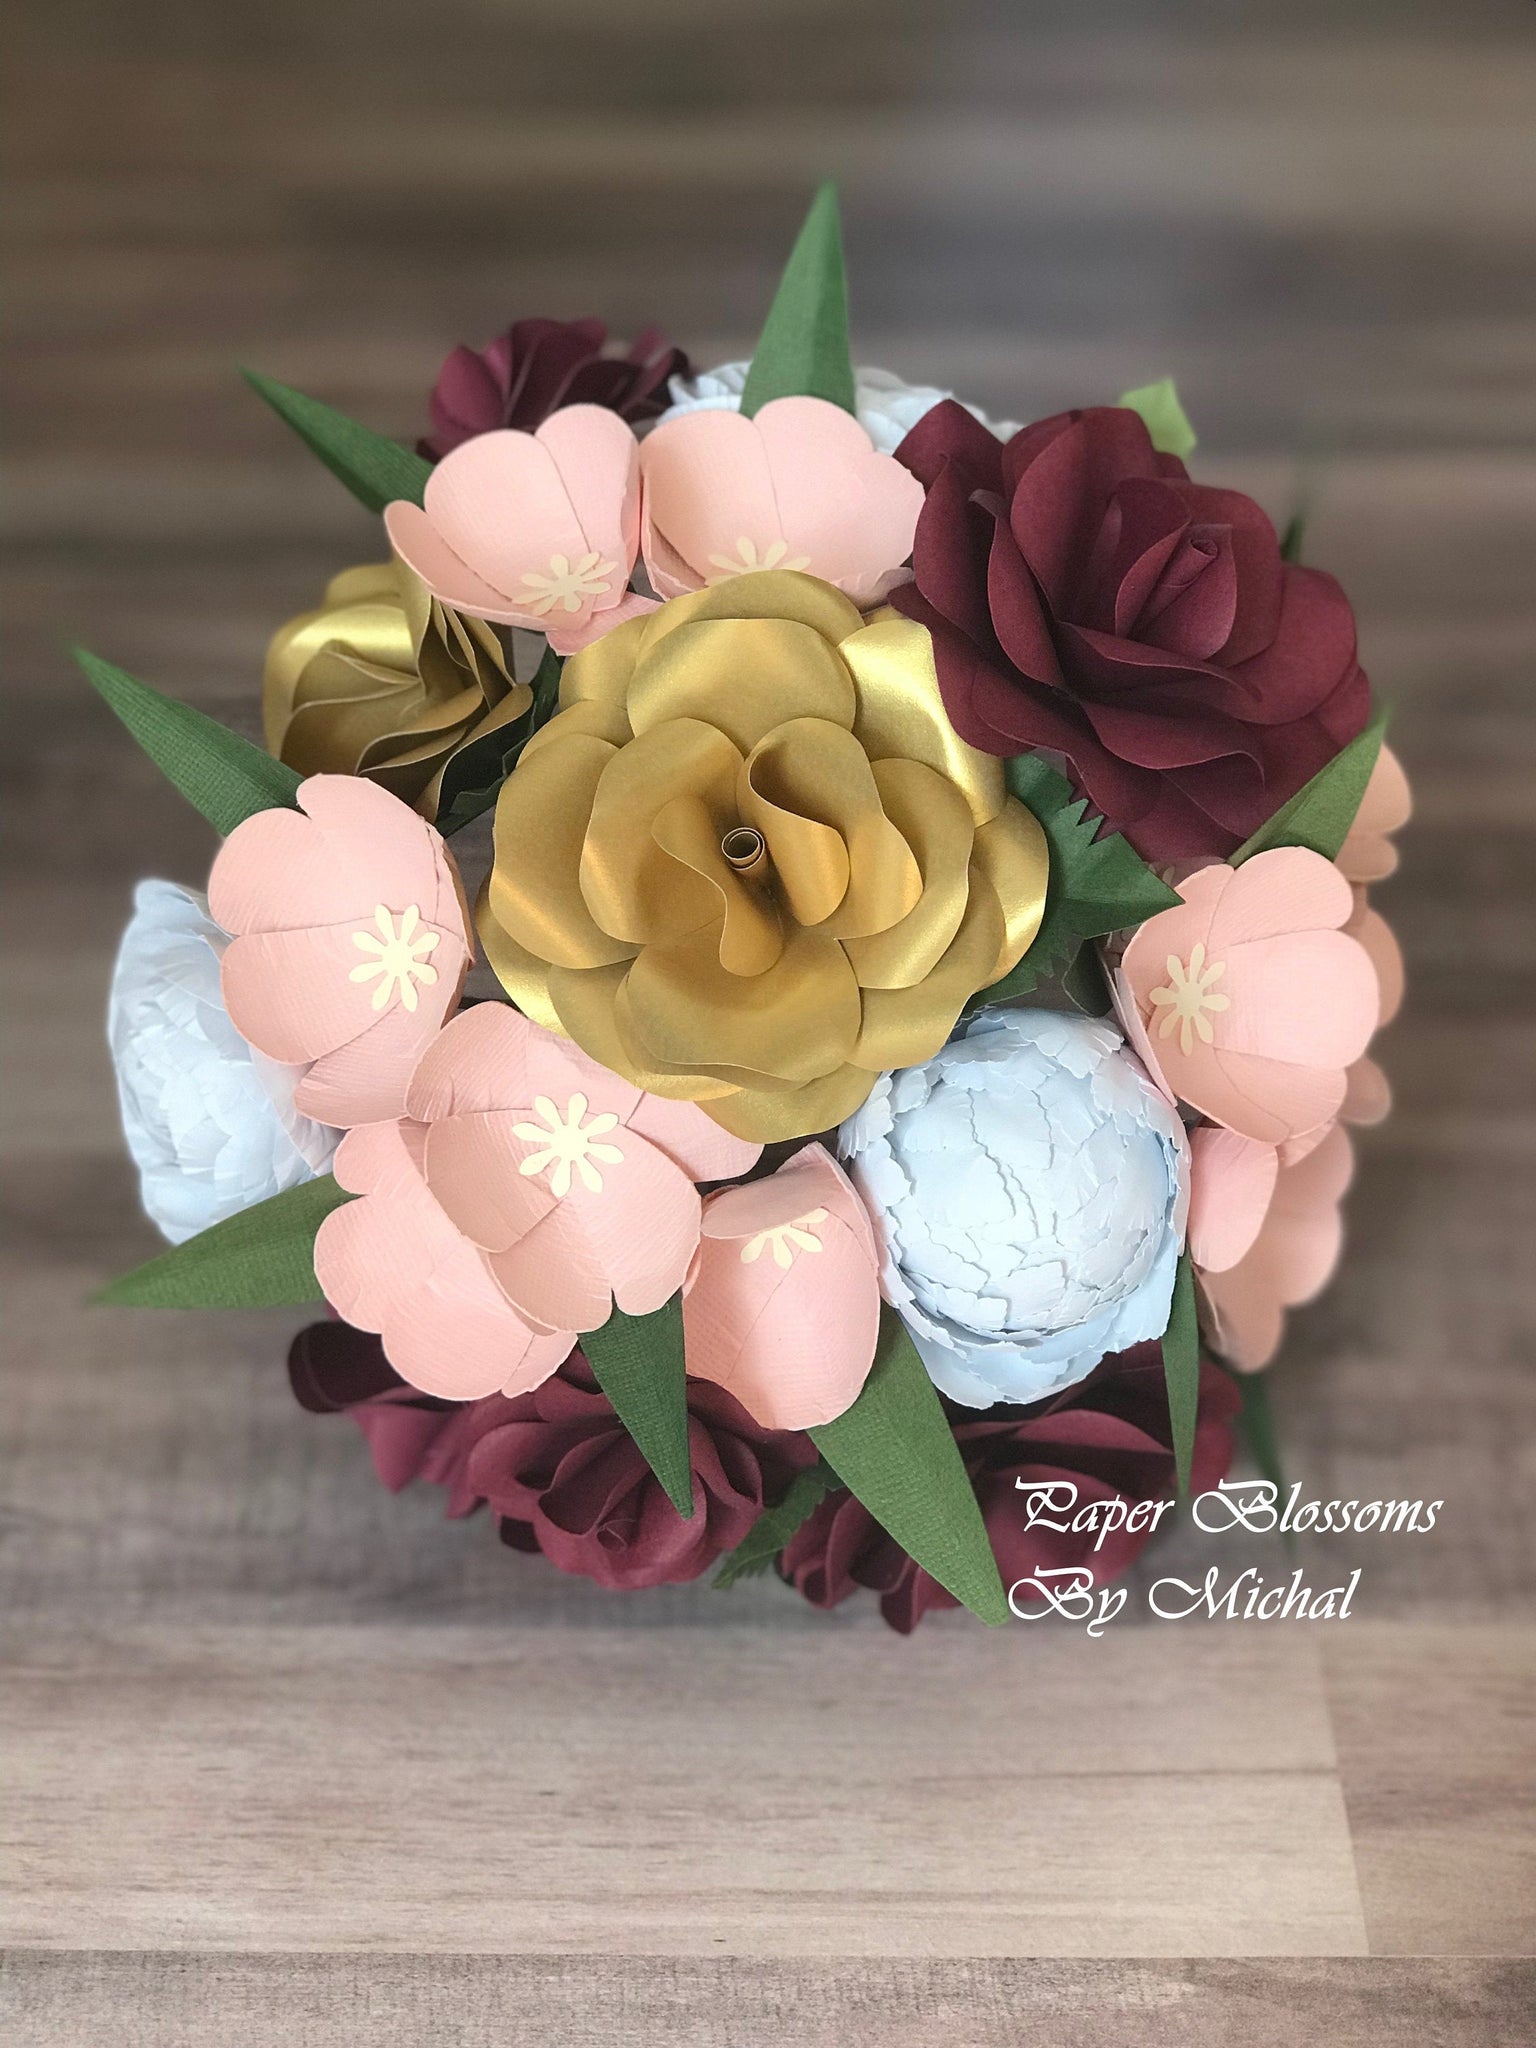 25 Mix Paper Flower Wedding bouquet DIY Scrapbook Card Topper TH